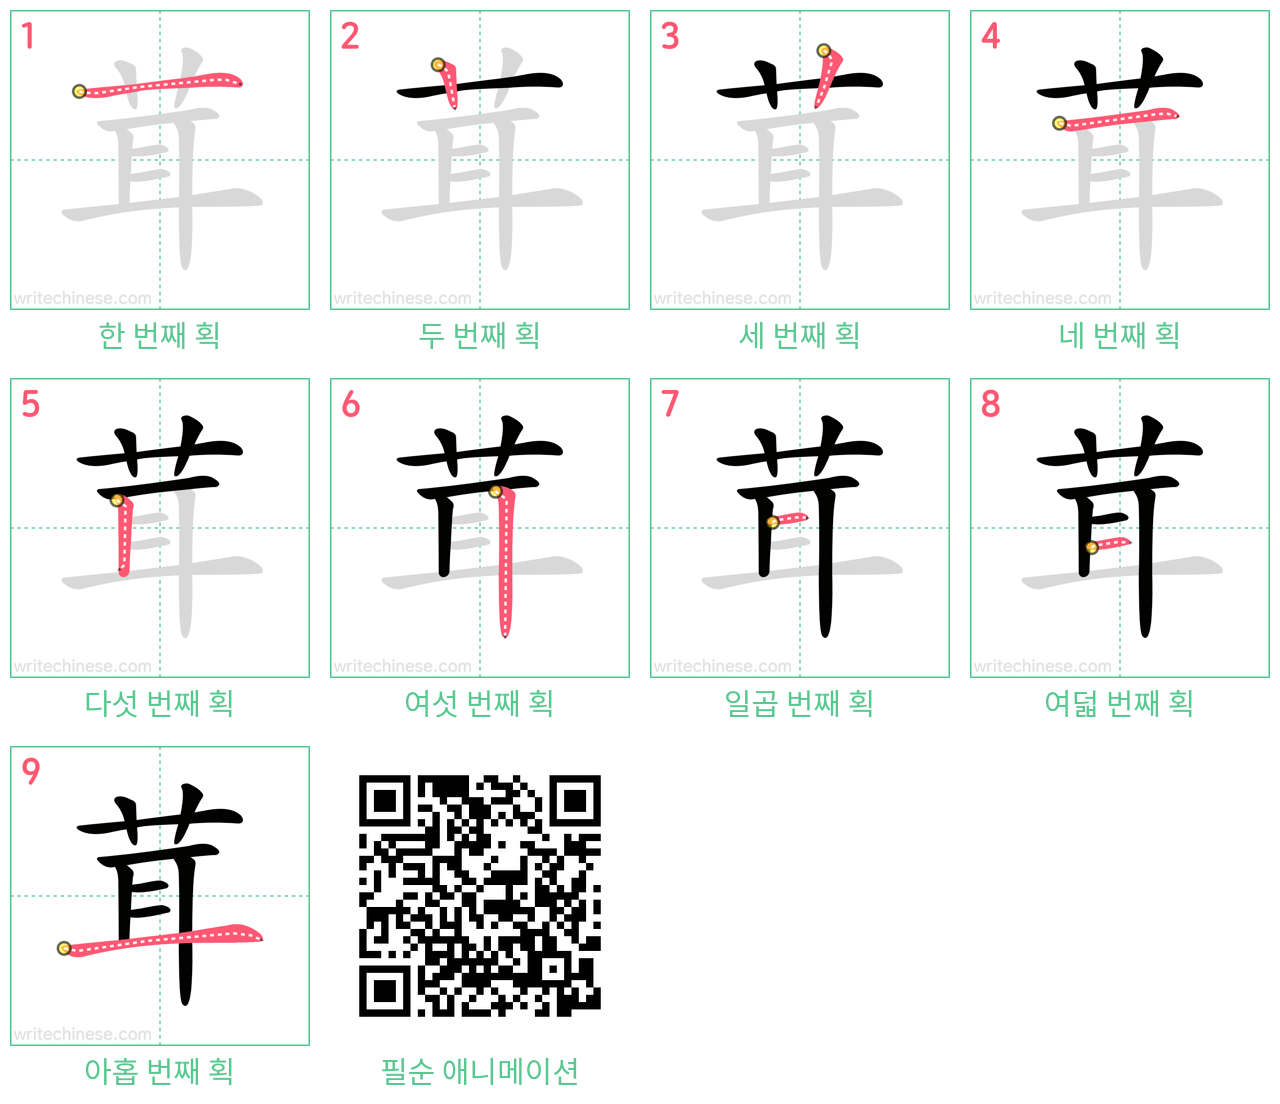 茸 step-by-step stroke order diagrams